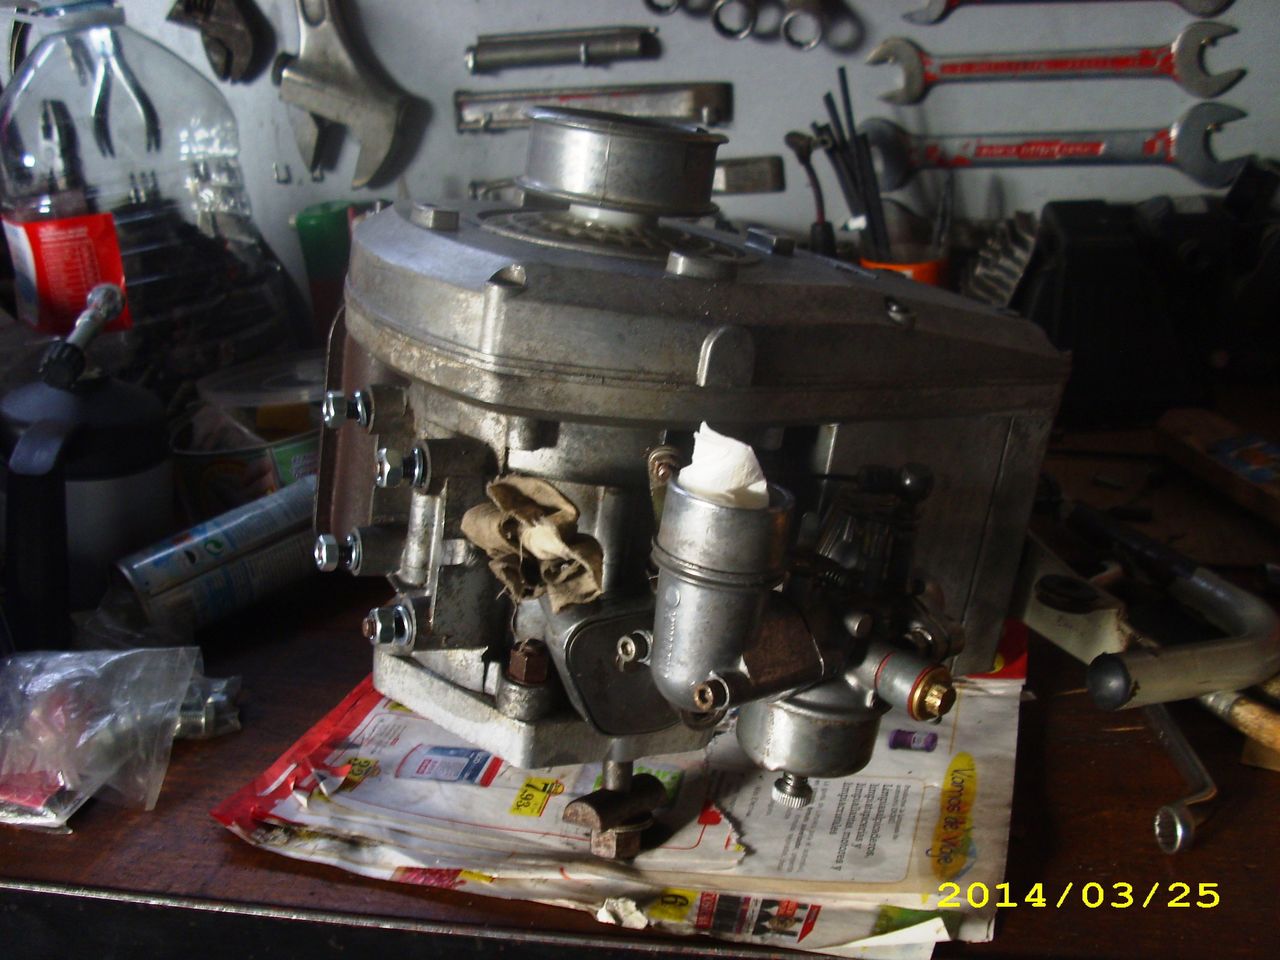 [Volpino GA-80] Motor Benelli 2T, empezando restauración Limpieza_motor